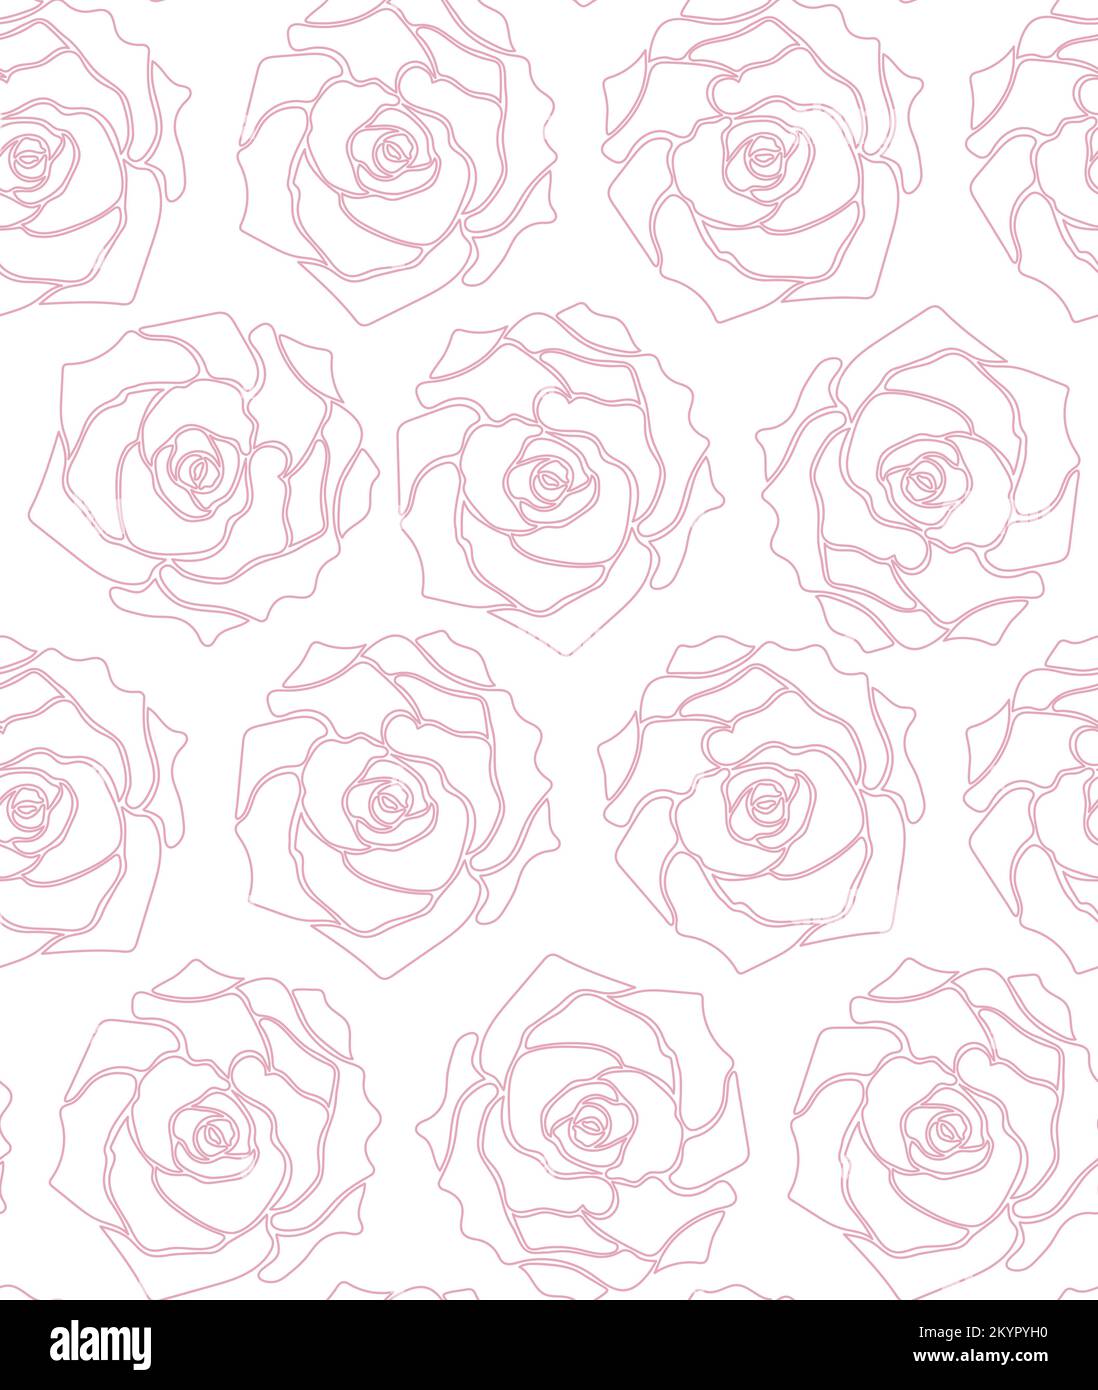 Motif roses roses sans couture. Contour rose sur fond blanc. Illustration vectorielle monochrome dessinée à la main. Illustration de Vecteur